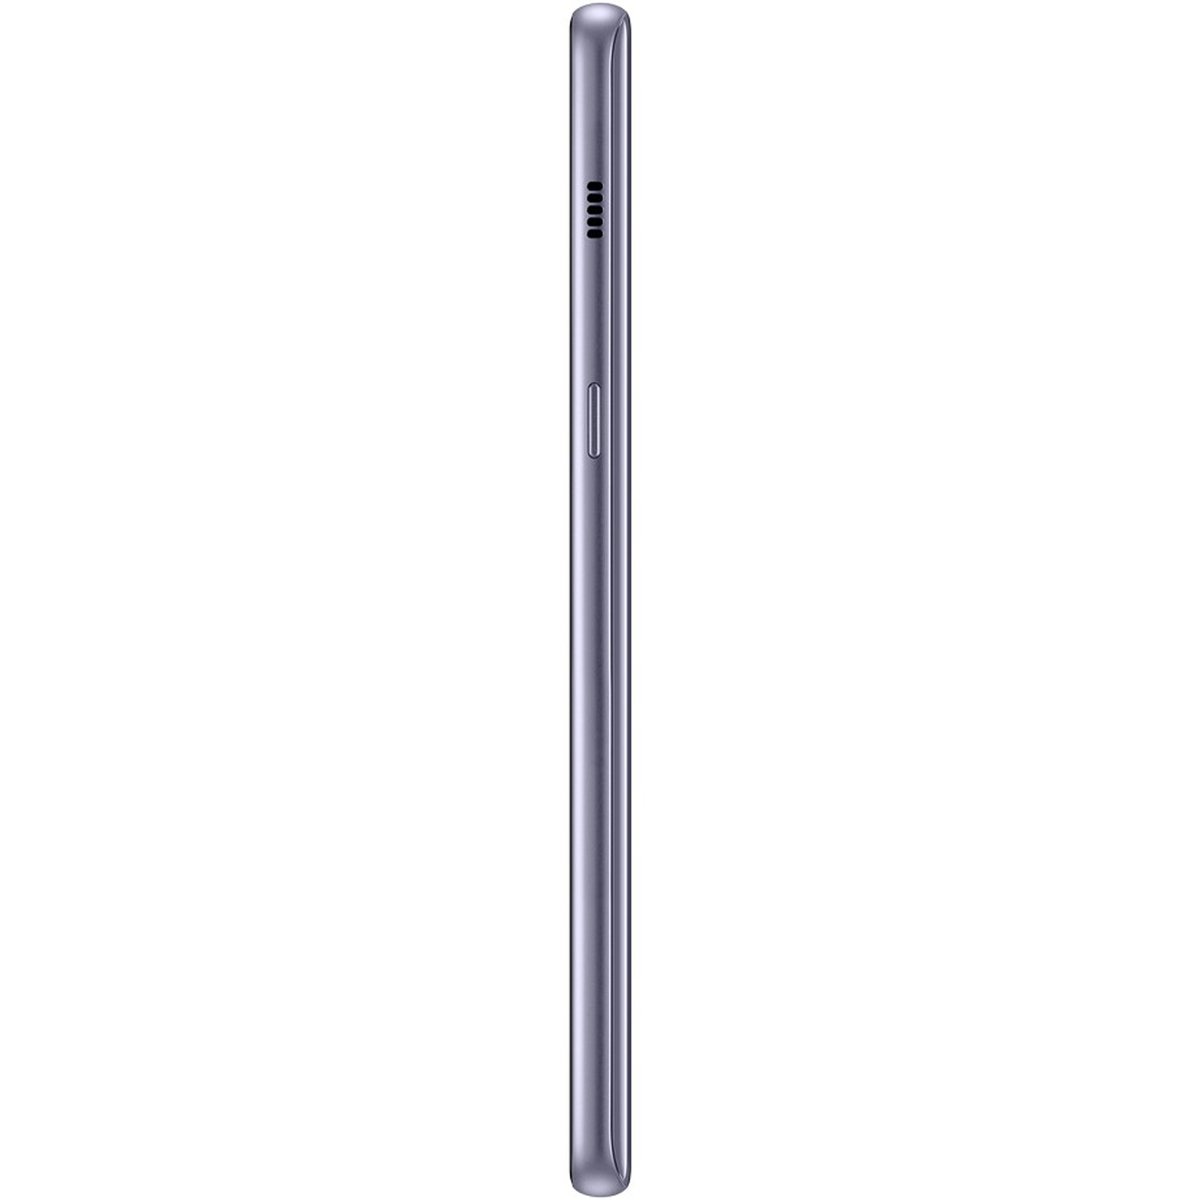 Samsung Galaxy A8 Plus (A730)2018 64GB 4G Orchid Grey